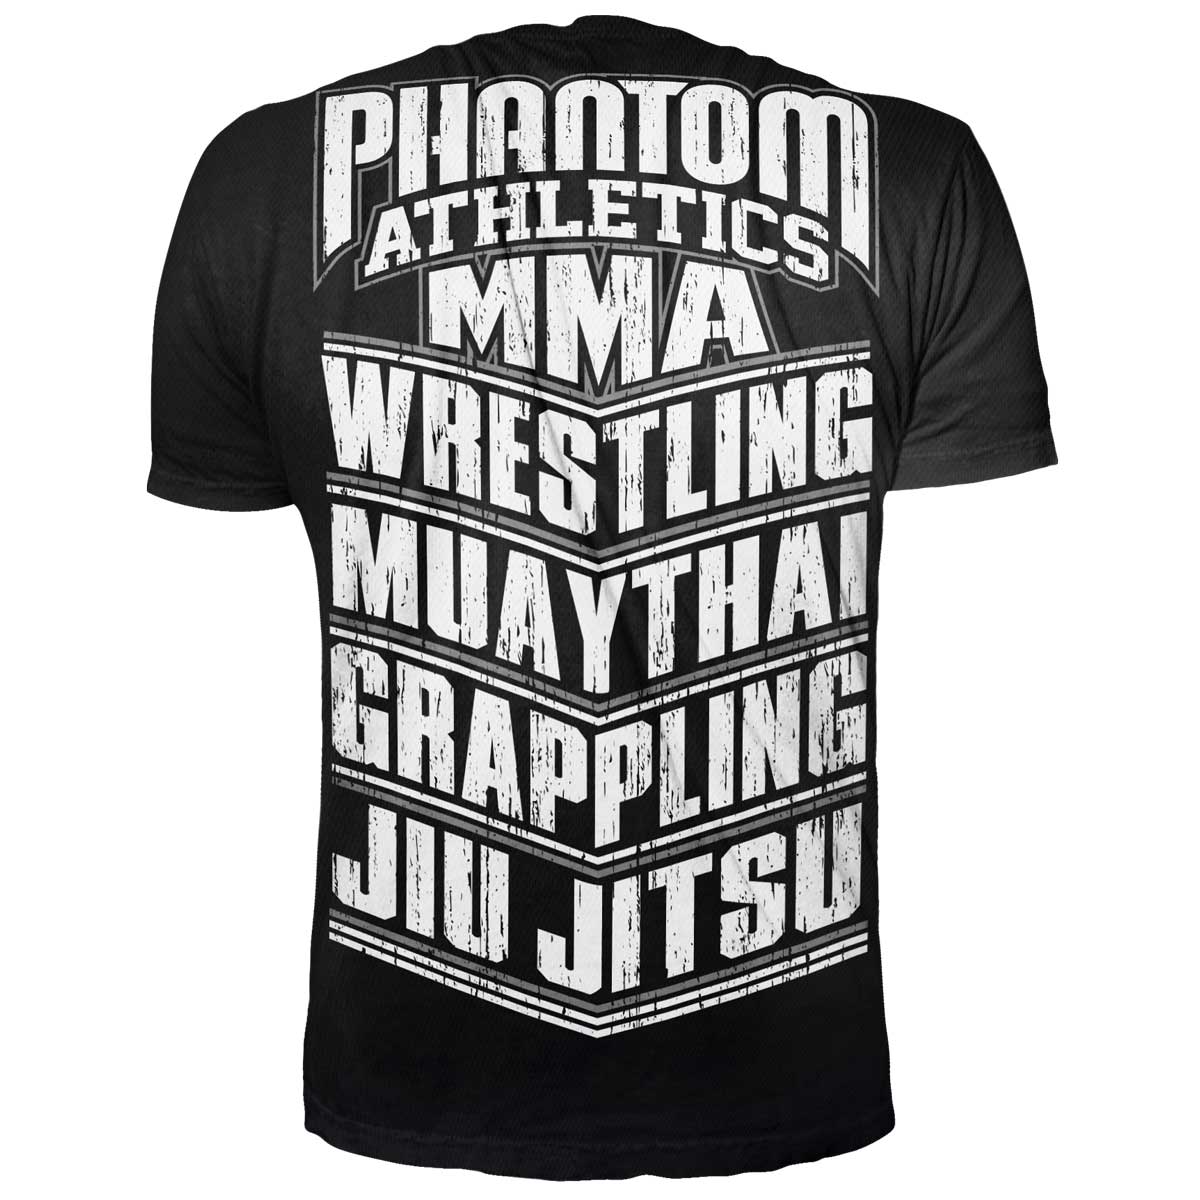 Phantom T-Shirt für alle Kampfsportler. Mit MMA, WRESTLING, MUAY THAI, GRAPPLING, JIU JITSU Schriftzug. Ideal für dein Fight Training.